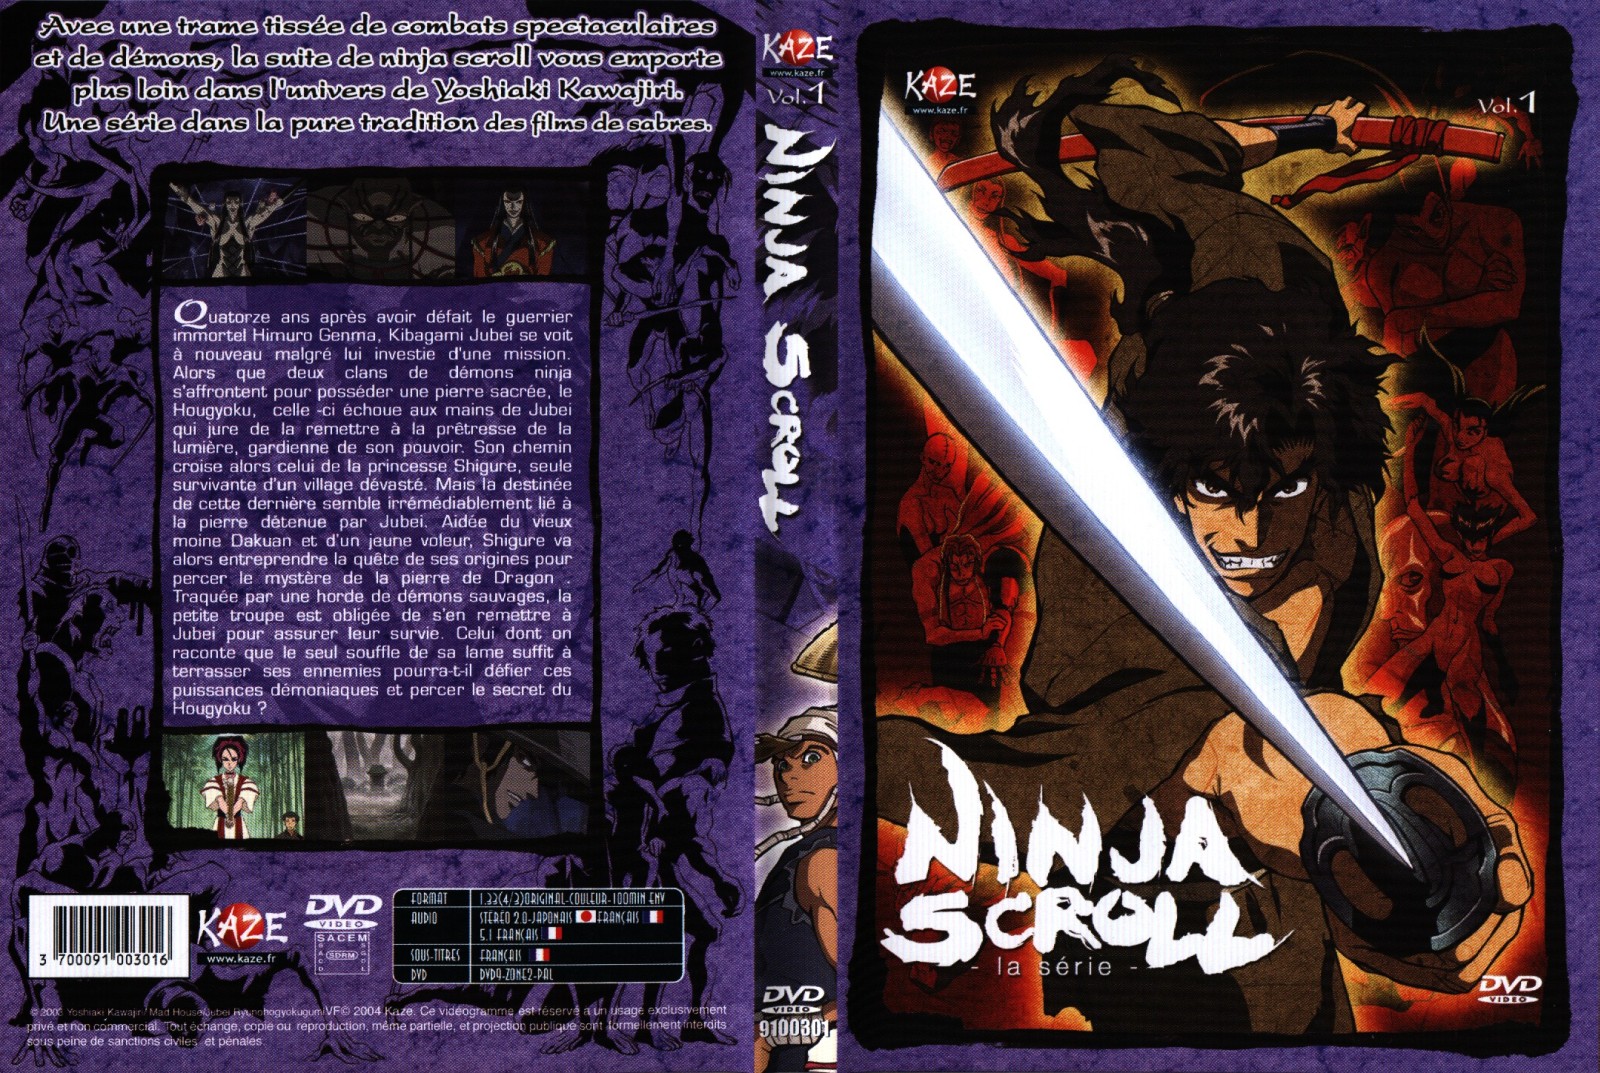 Jaquette DVD Ninja scroll la srie vol 1